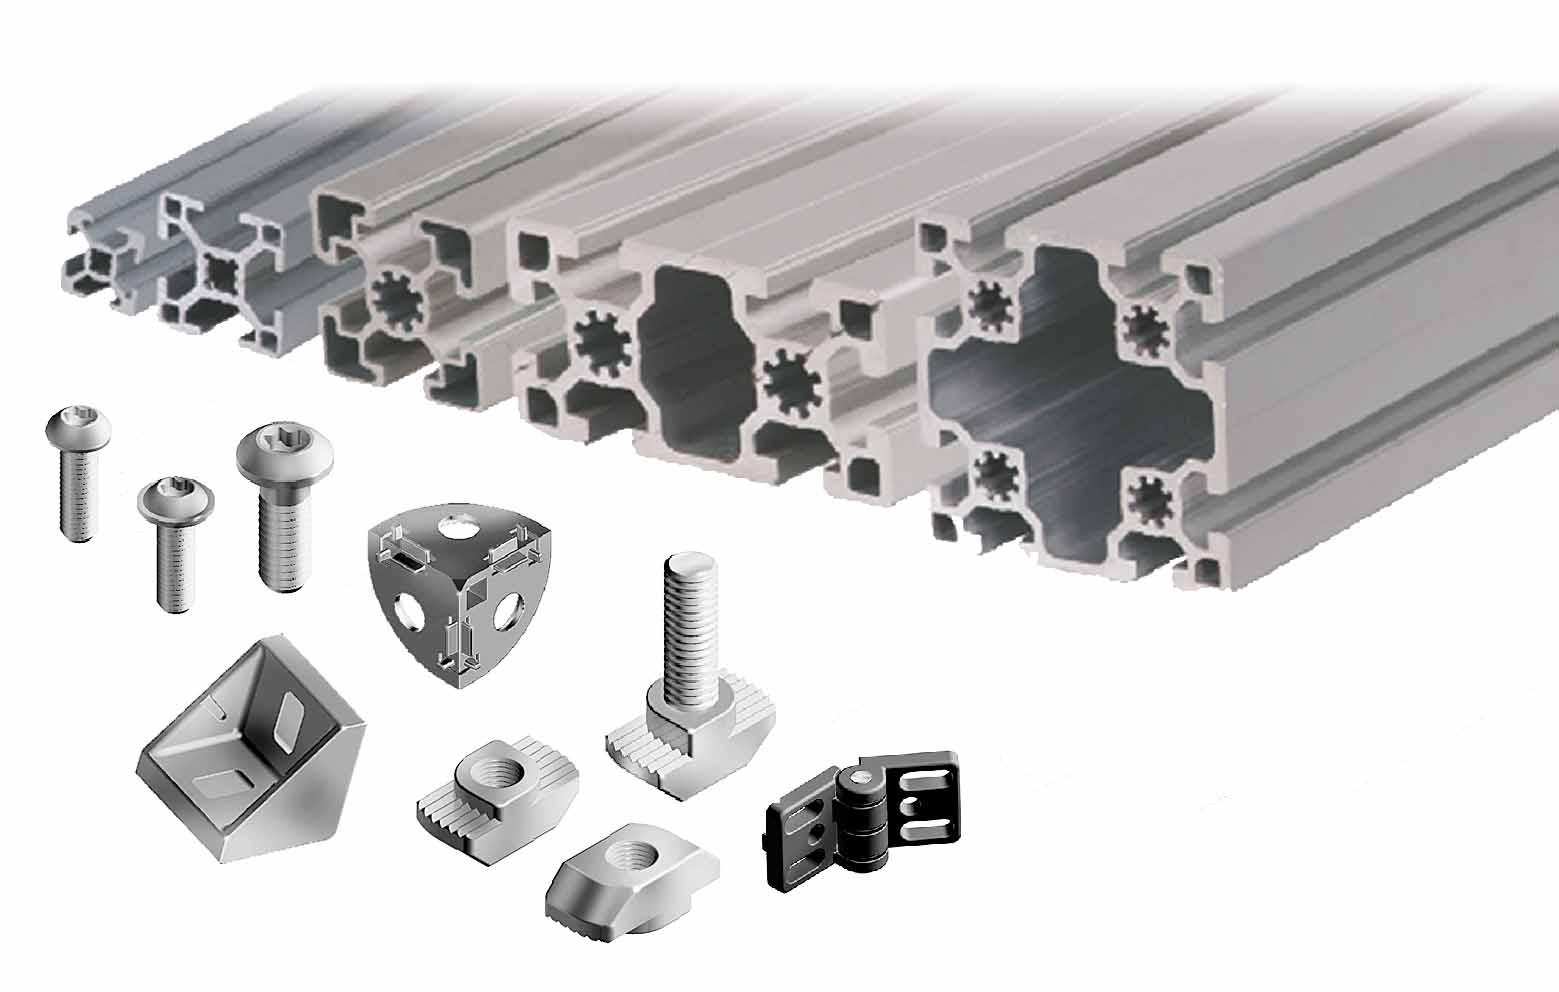 Las diferencias, ventajas y desventajas entre los perfiles de aluminio extruido y los productos de aleación de aluminio fundido a presión.
        